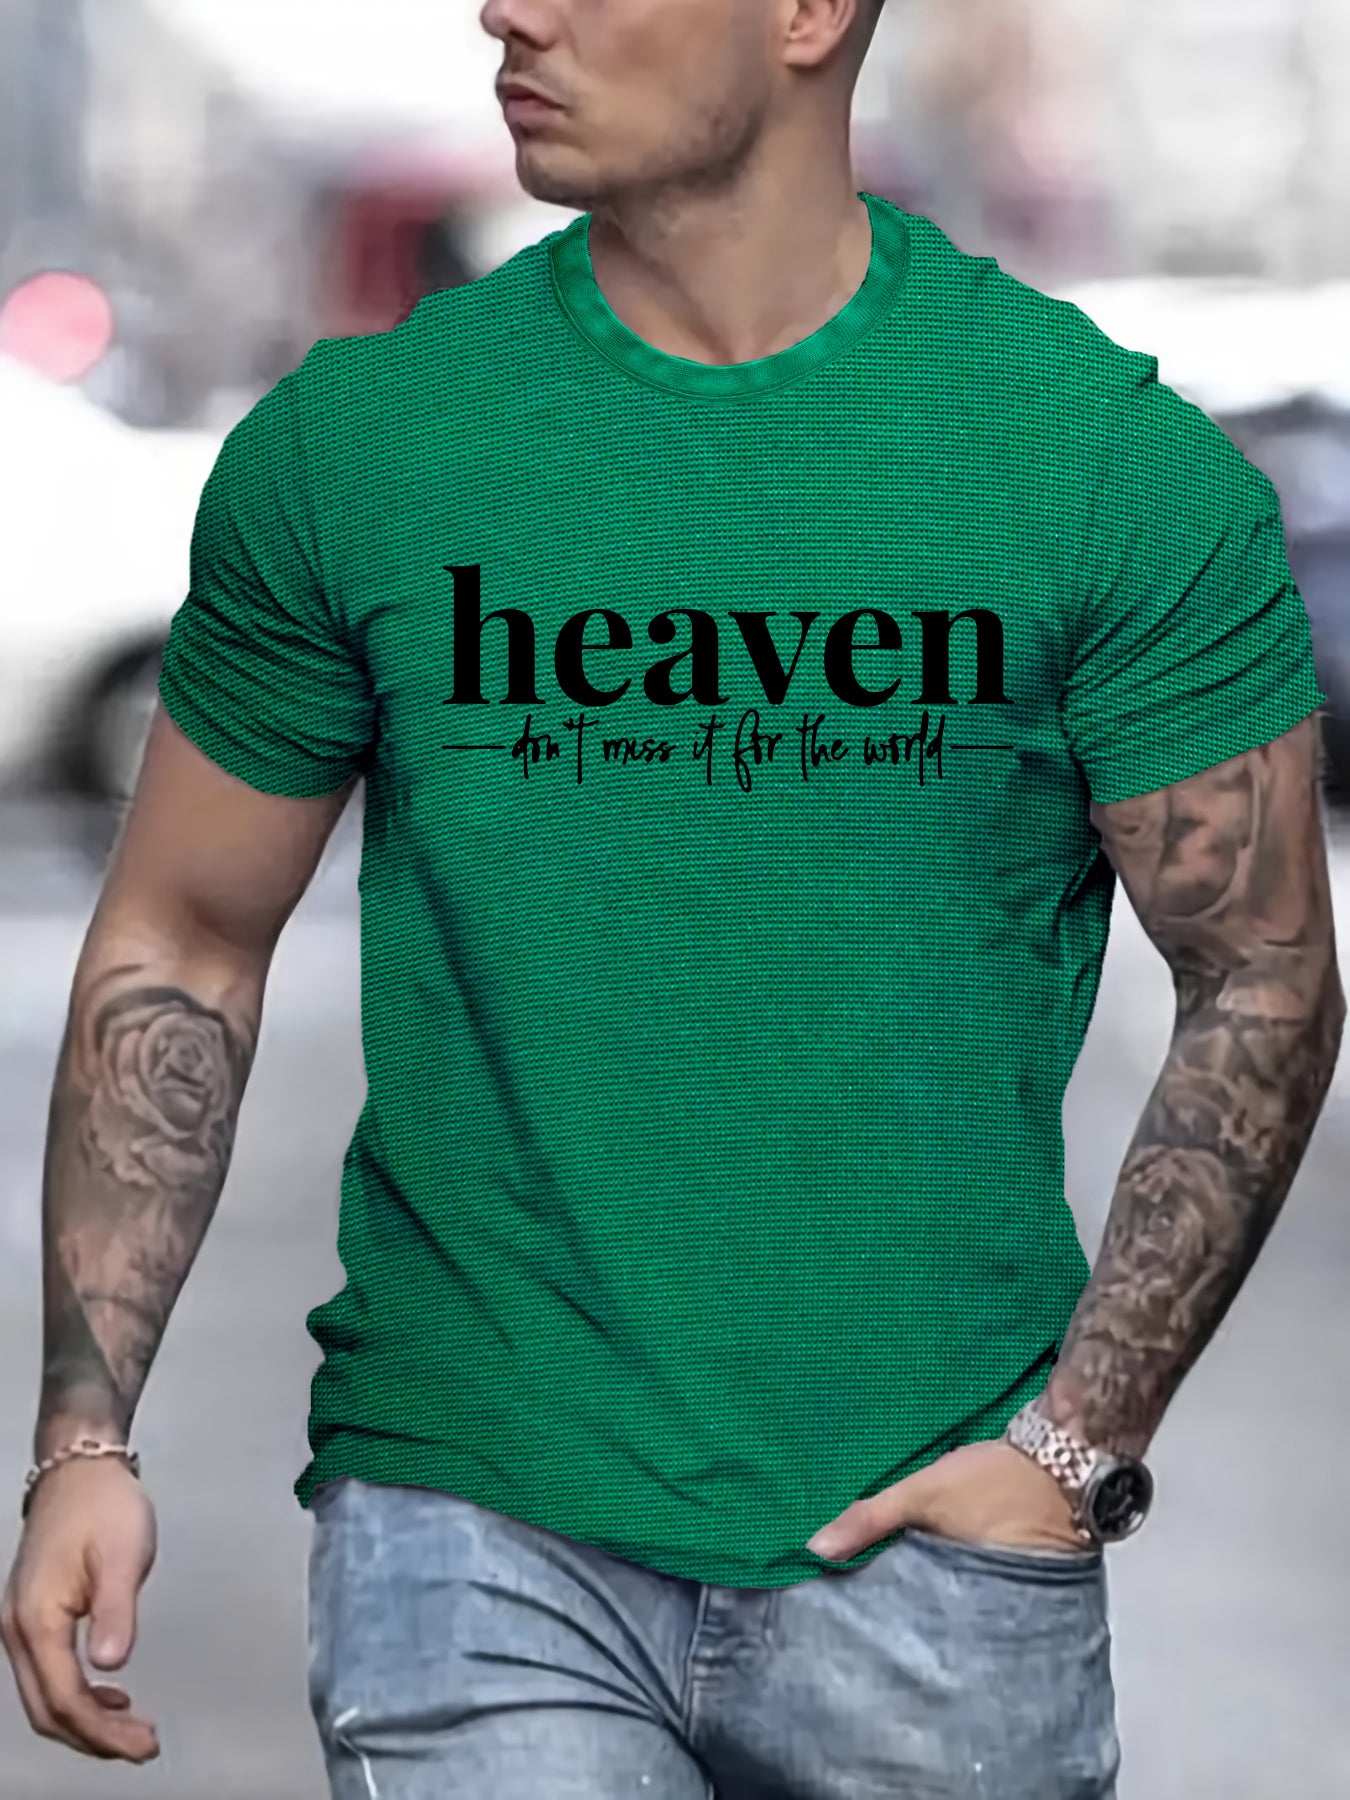 Heaven Don't Miss It For The World Men's Christian T-shirt claimedbygoddesigns